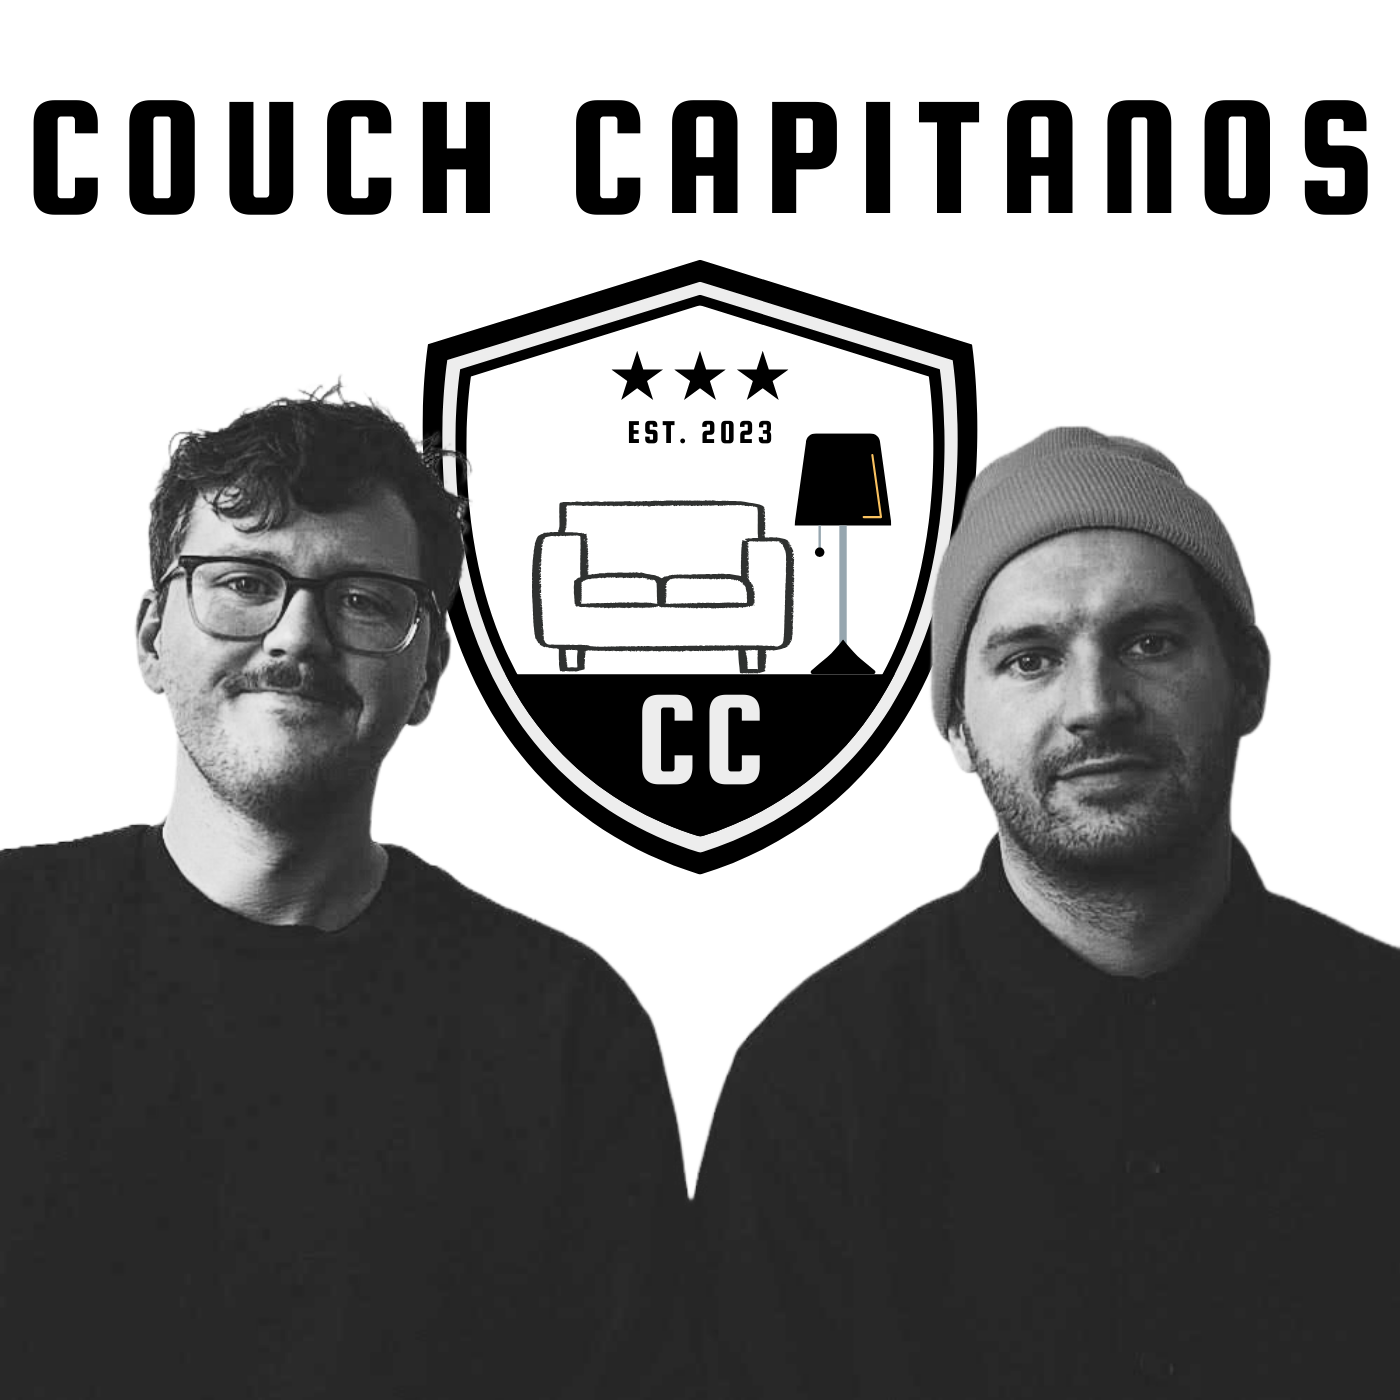 Couch Capitanos